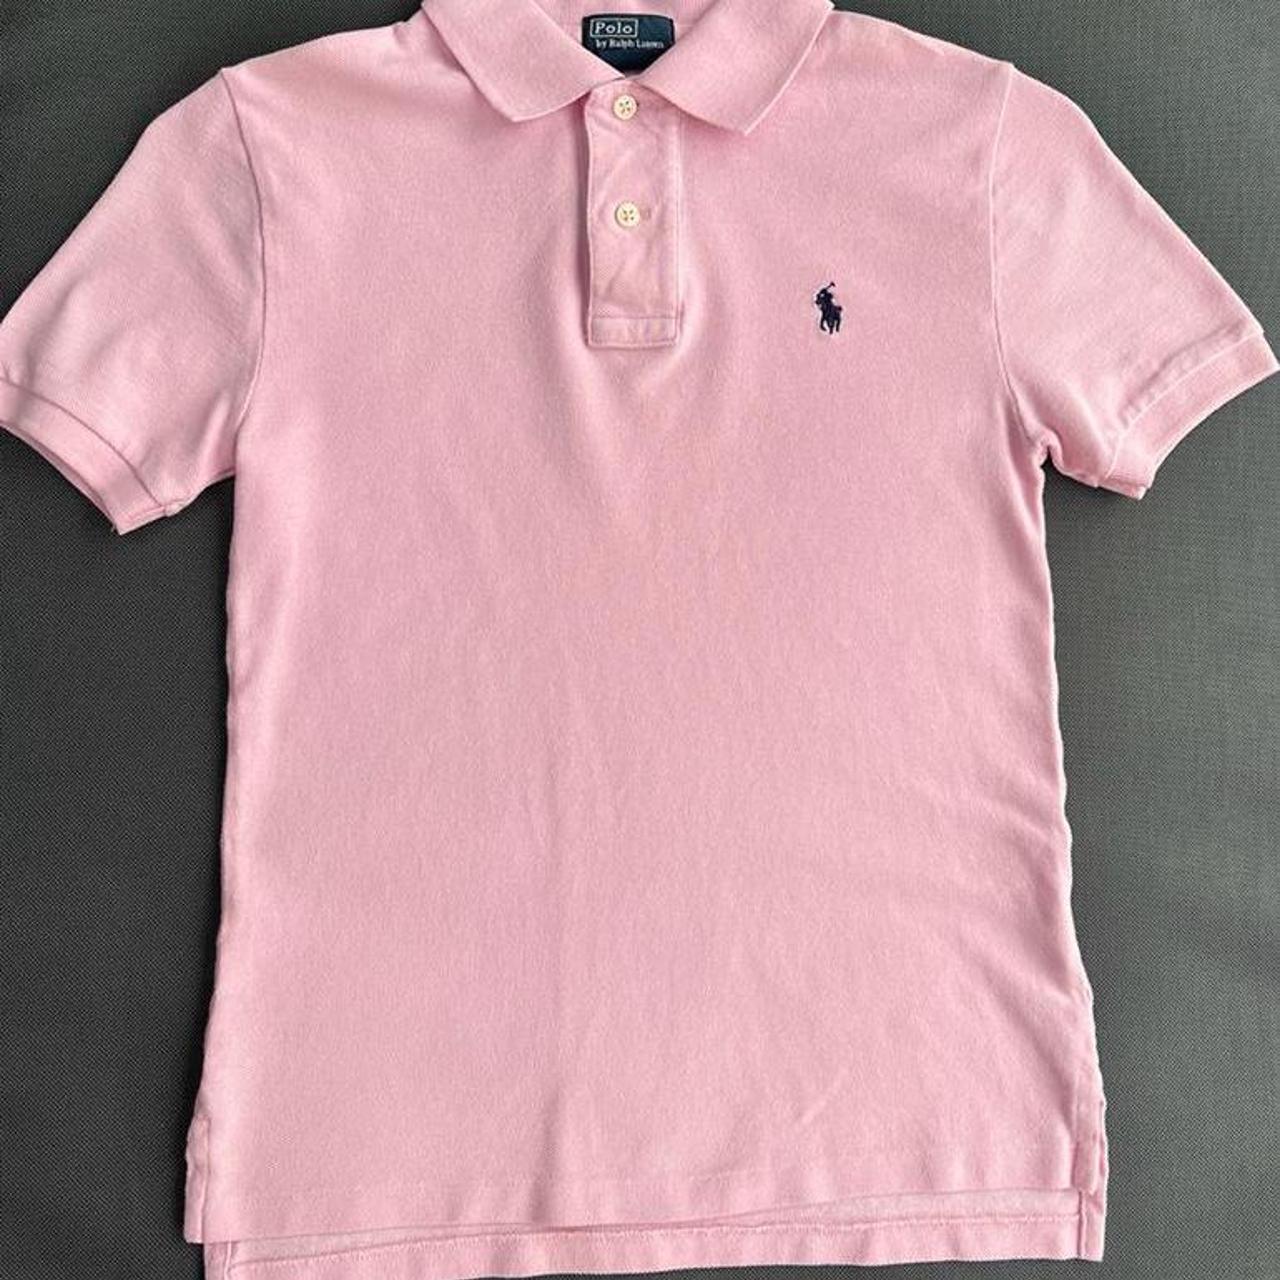 Boys S (8) Ralph Lauren Polo Shirt - Depop